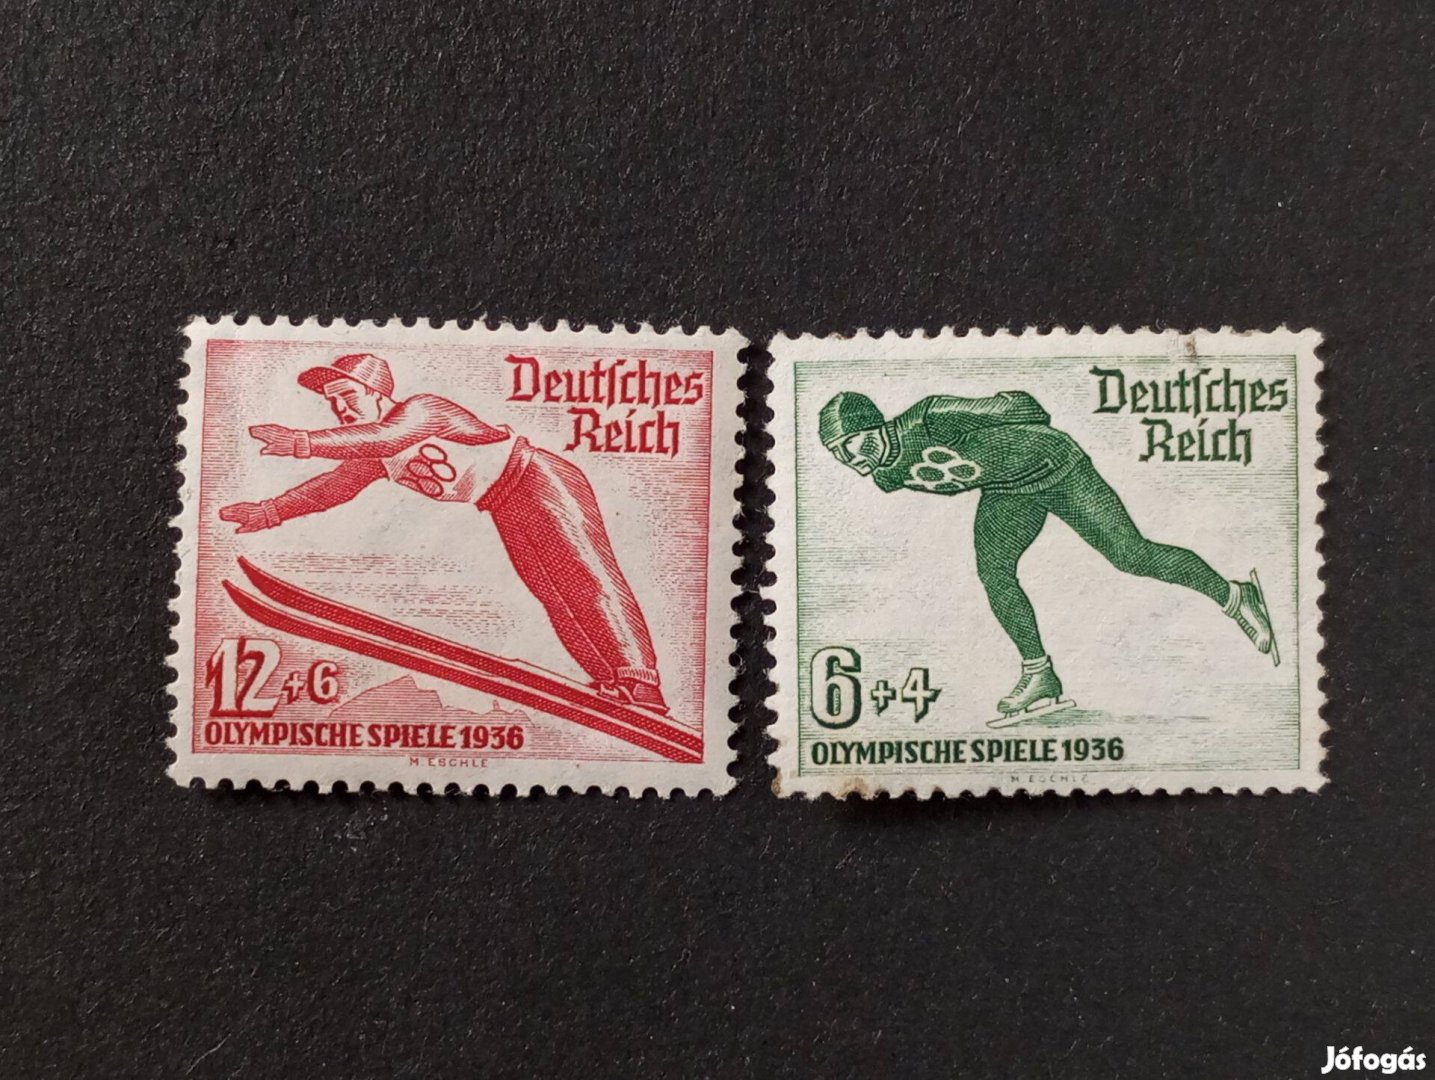 Deutsches Reich postatiszta bélyegsor 1935. évi téli olimpiai játékok